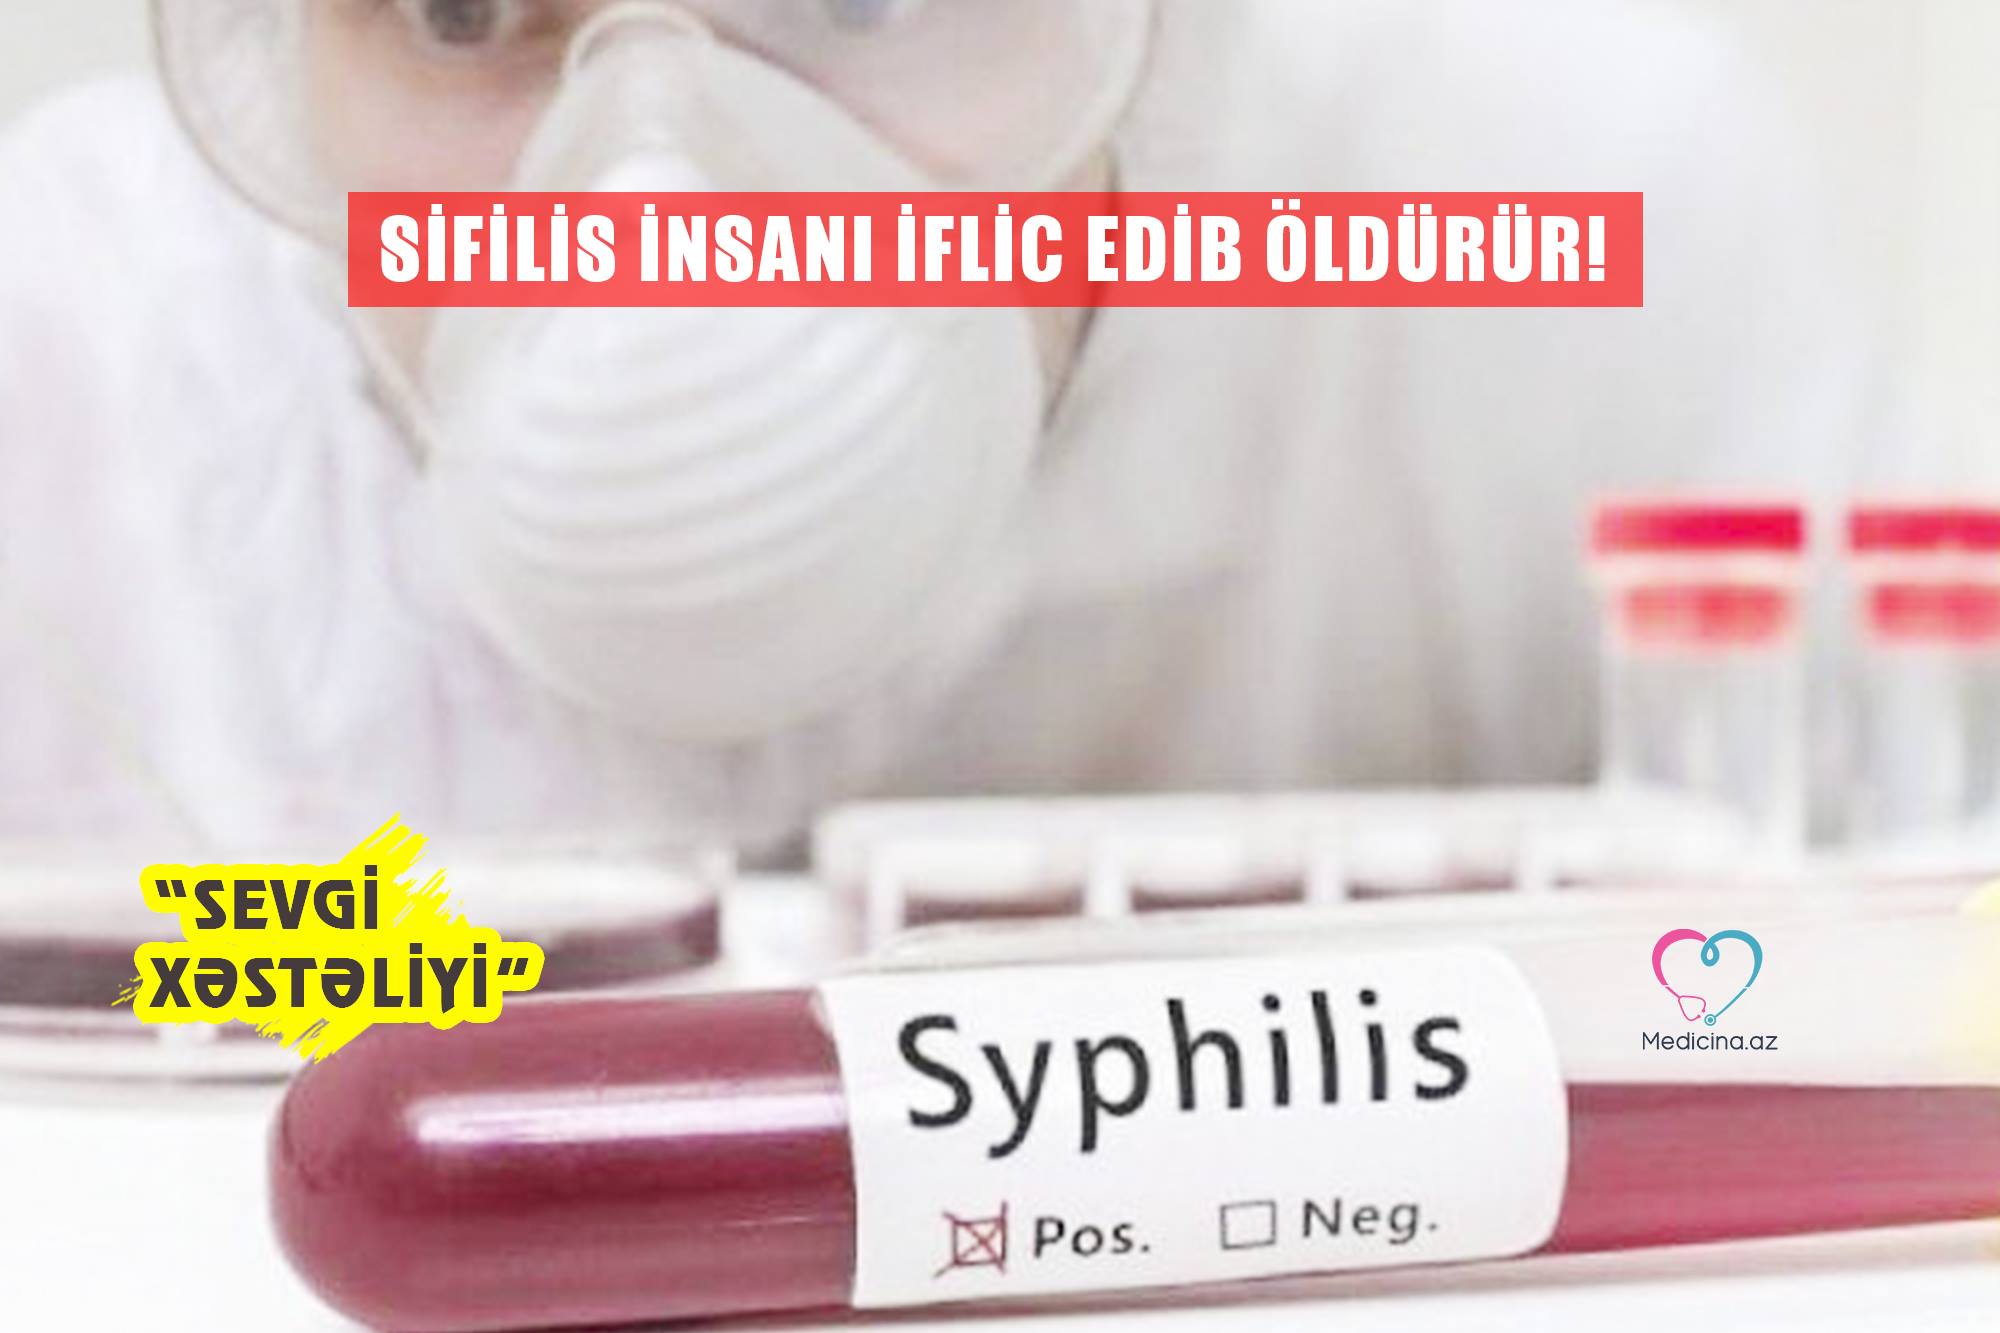 - Sifilis insanı iflic edib öldürür! “Sevgi xəstəliyi” 